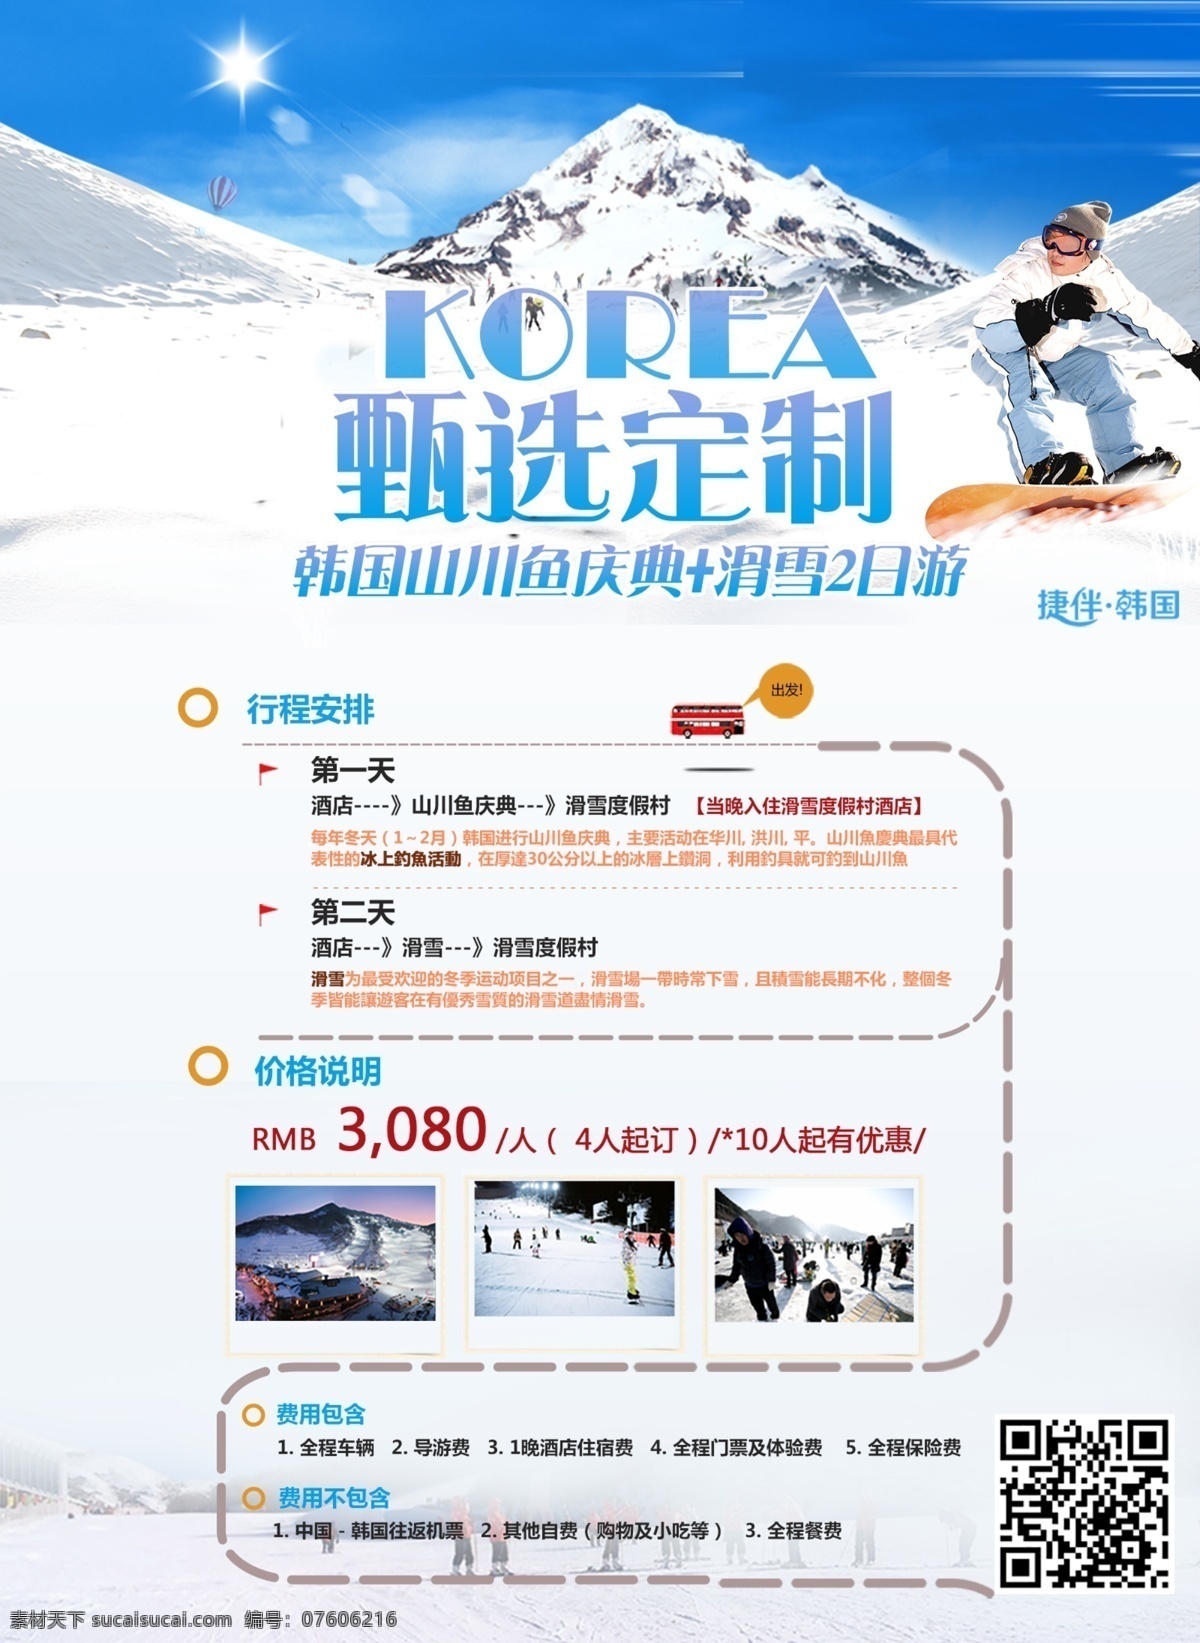 韩国 滑雪 旅游 海报 韩国旅游 滑雪旅游 banner dm宣传单 创意 滑雪人物 简约 首尔 冬天 雪景